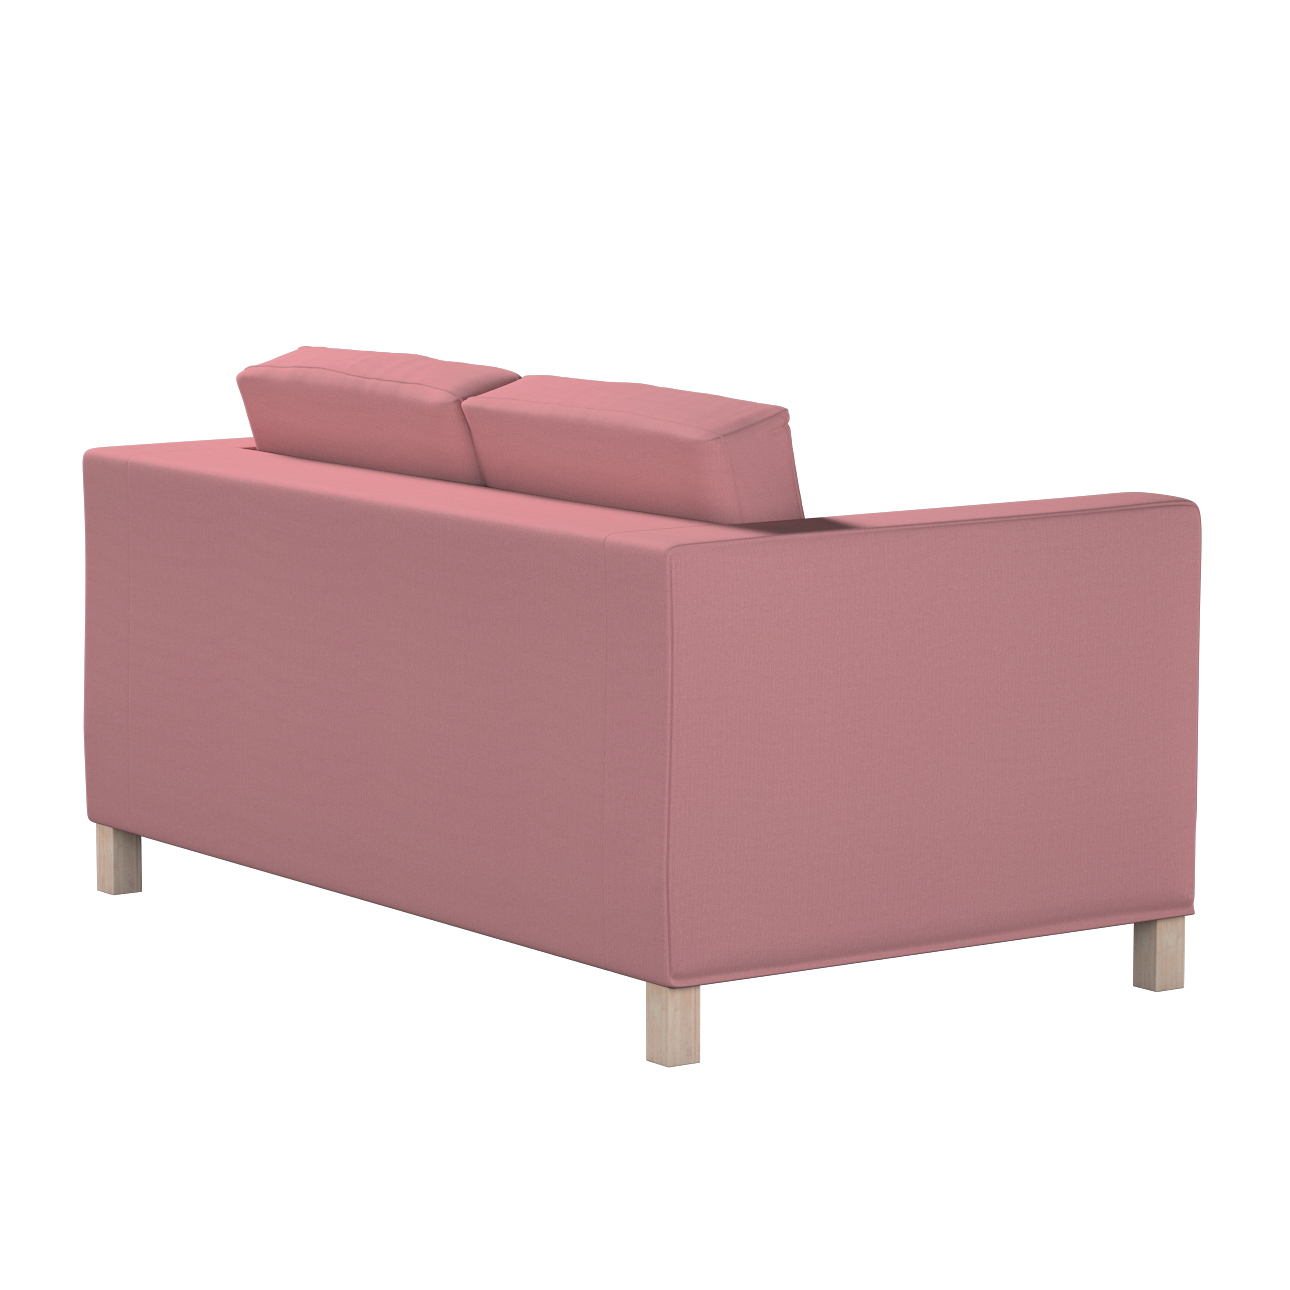 Bezug für Karlanda 2-Sitzer Sofa nicht ausklappbar, kurz, altrosa, 60cm x 3 günstig online kaufen